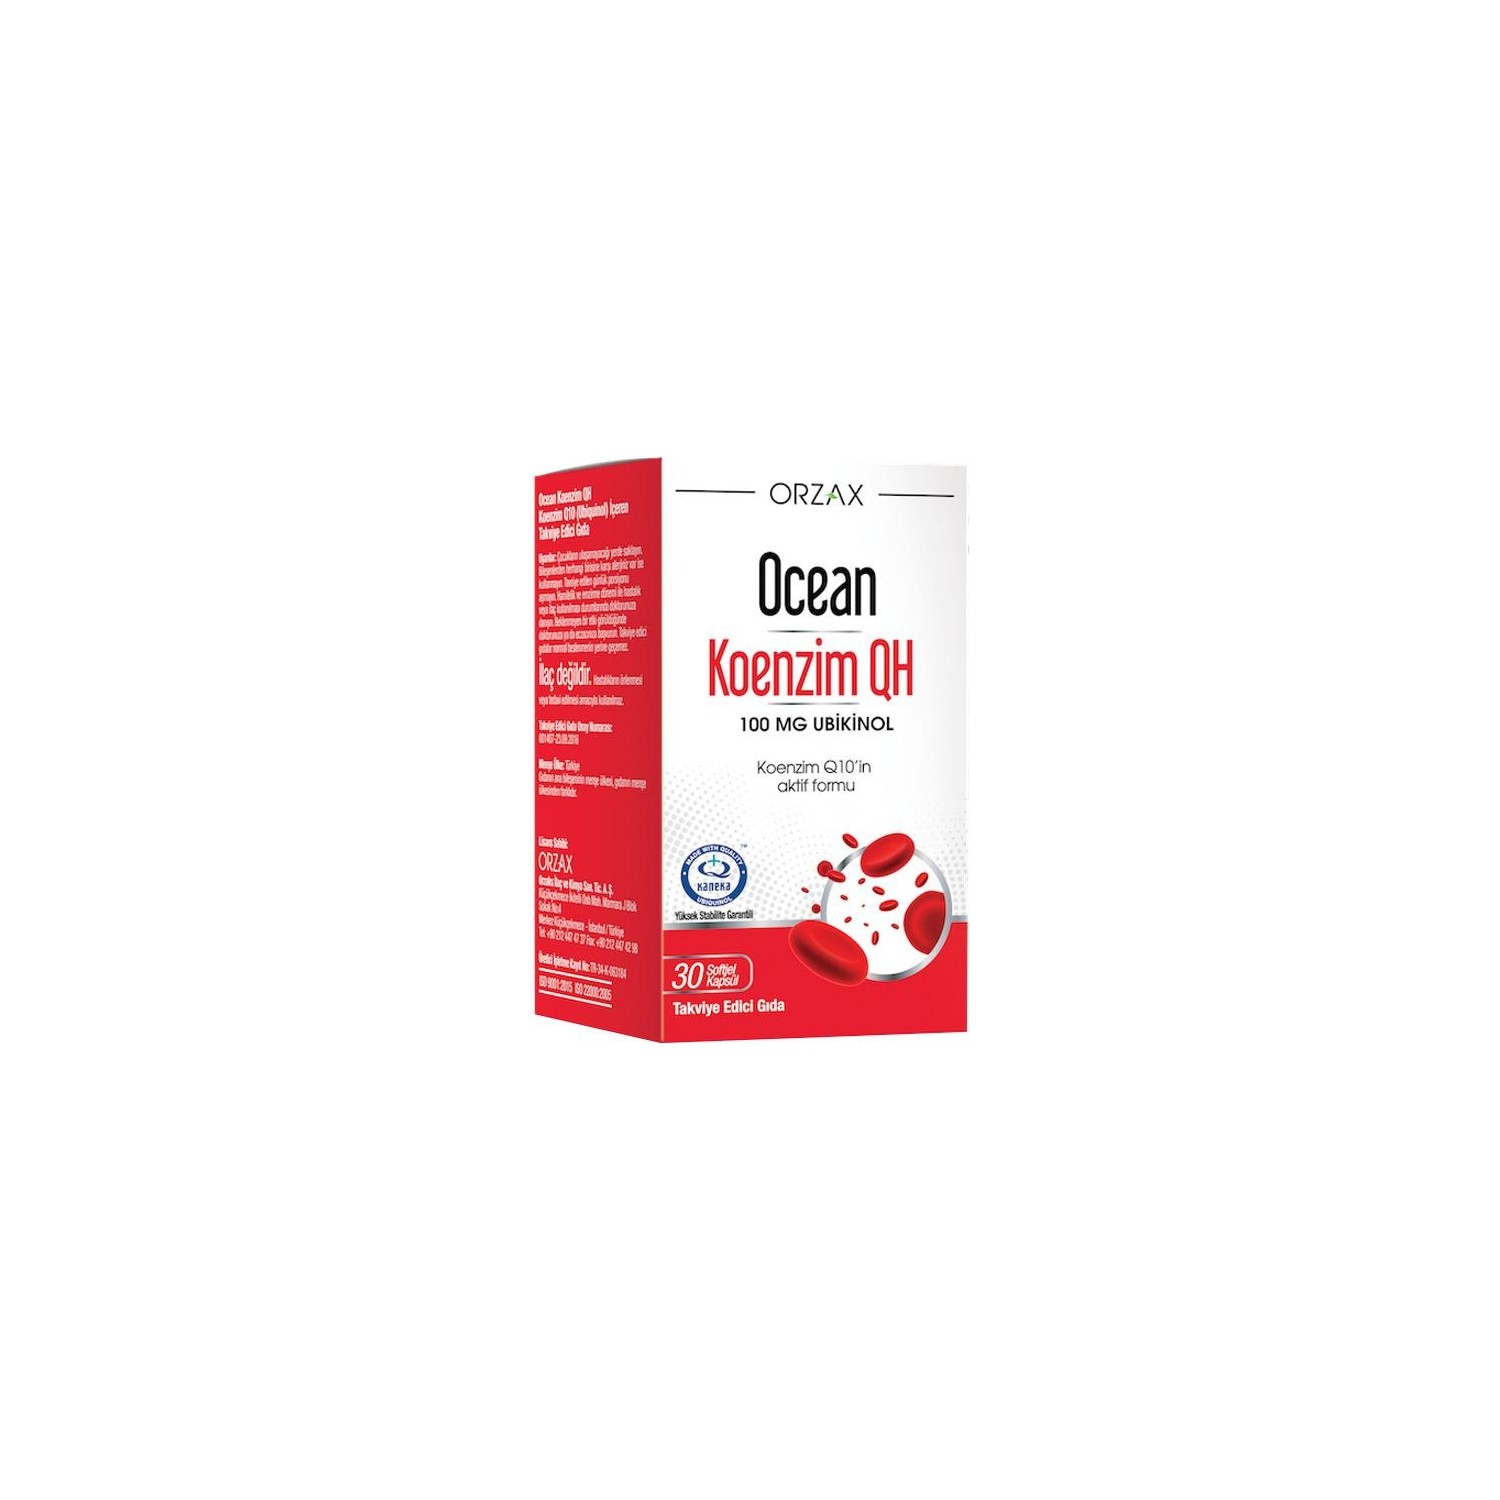 Коэнзим Qh Orzax 100 мг, 30 капсул омеганол коэнзим q10 капсулы 30 шт